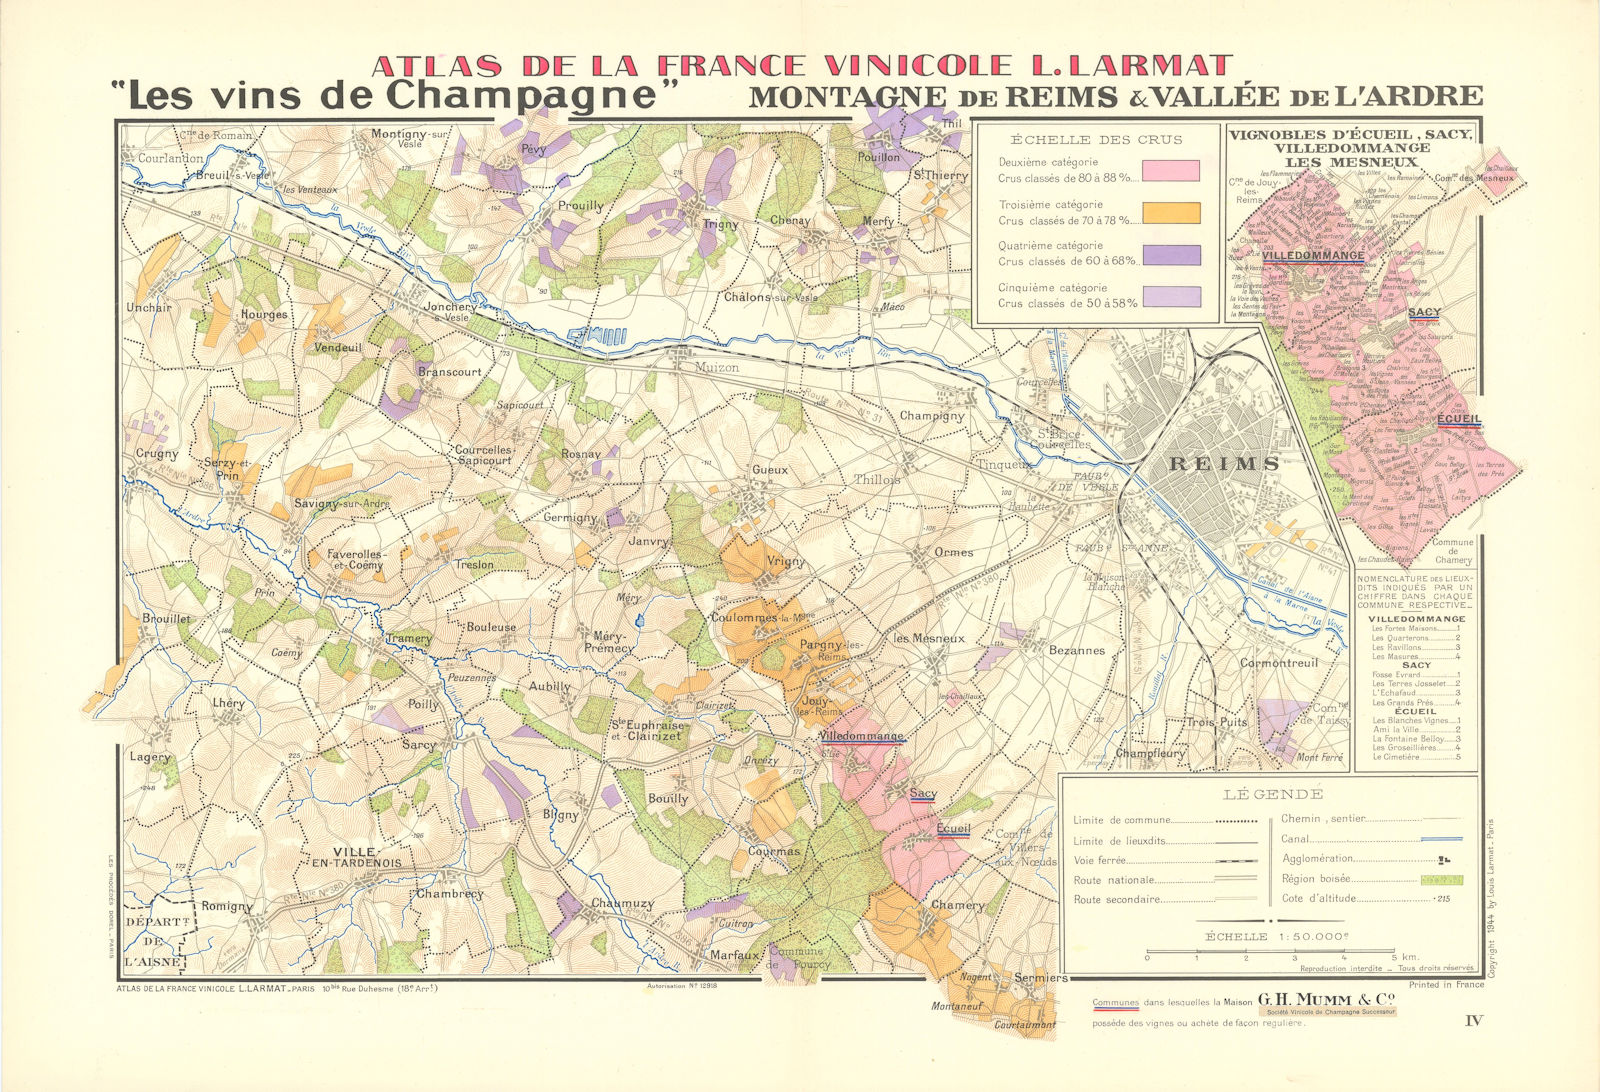 CHAMPAGNE VINEYARD MAP Montagne de Reims. Vallée de l'Ardre. Mumm. LARMAT 1944